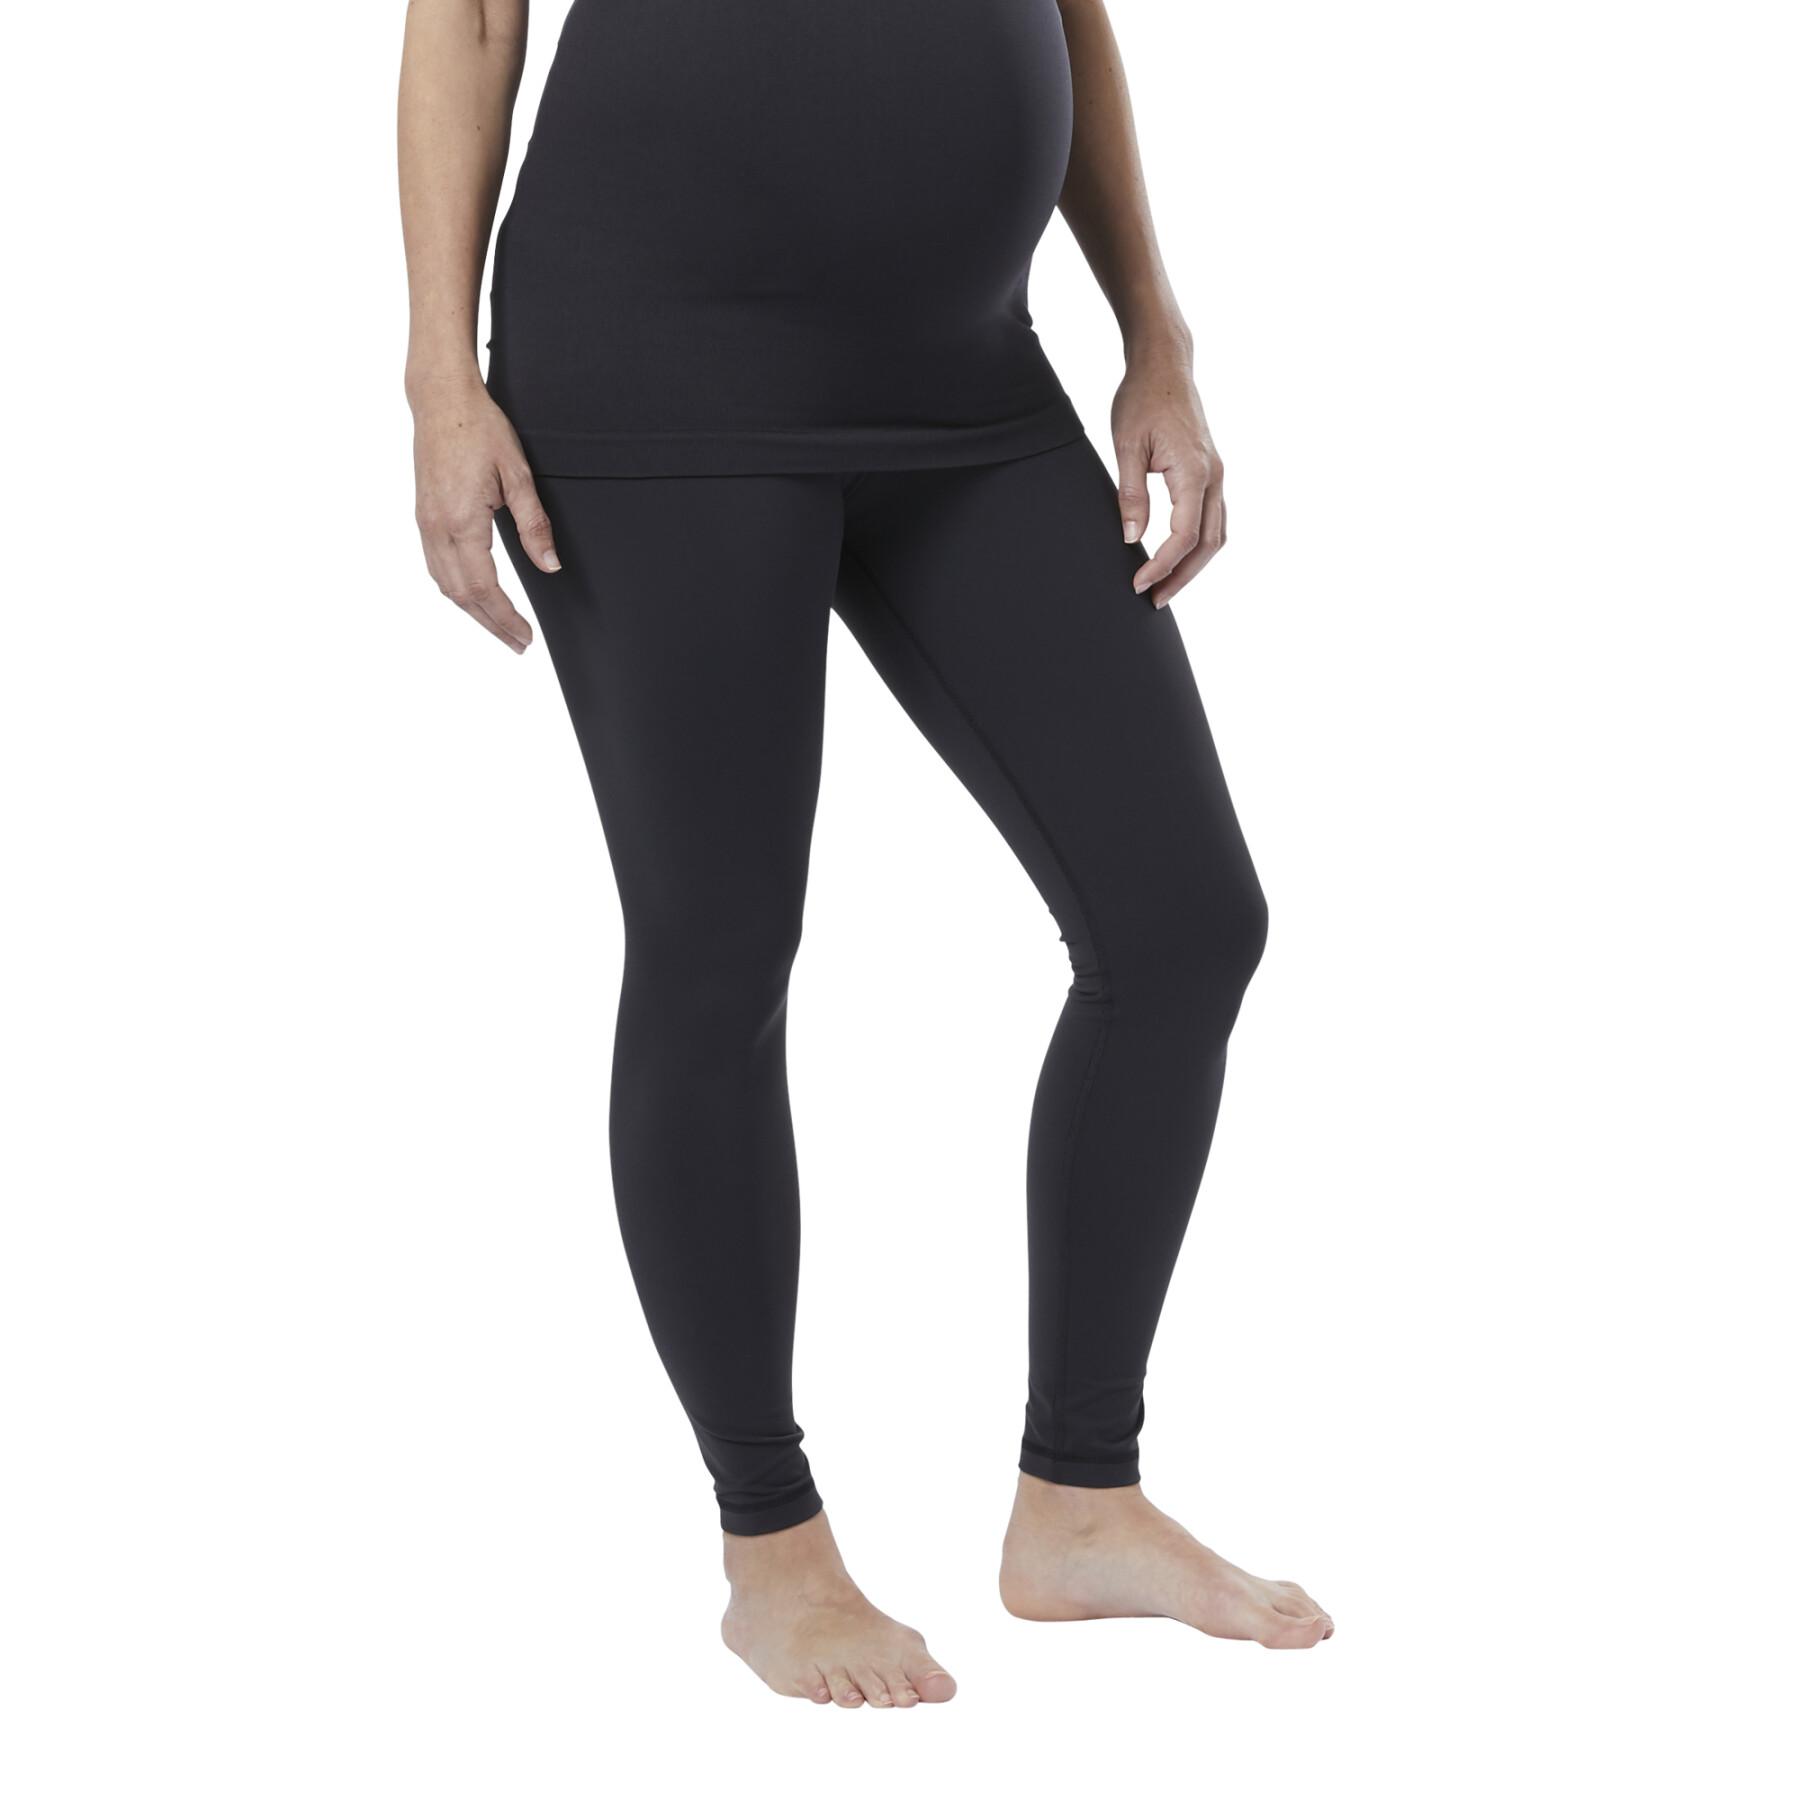 Legging Maternidade Reebok Yoga Lux 2.0